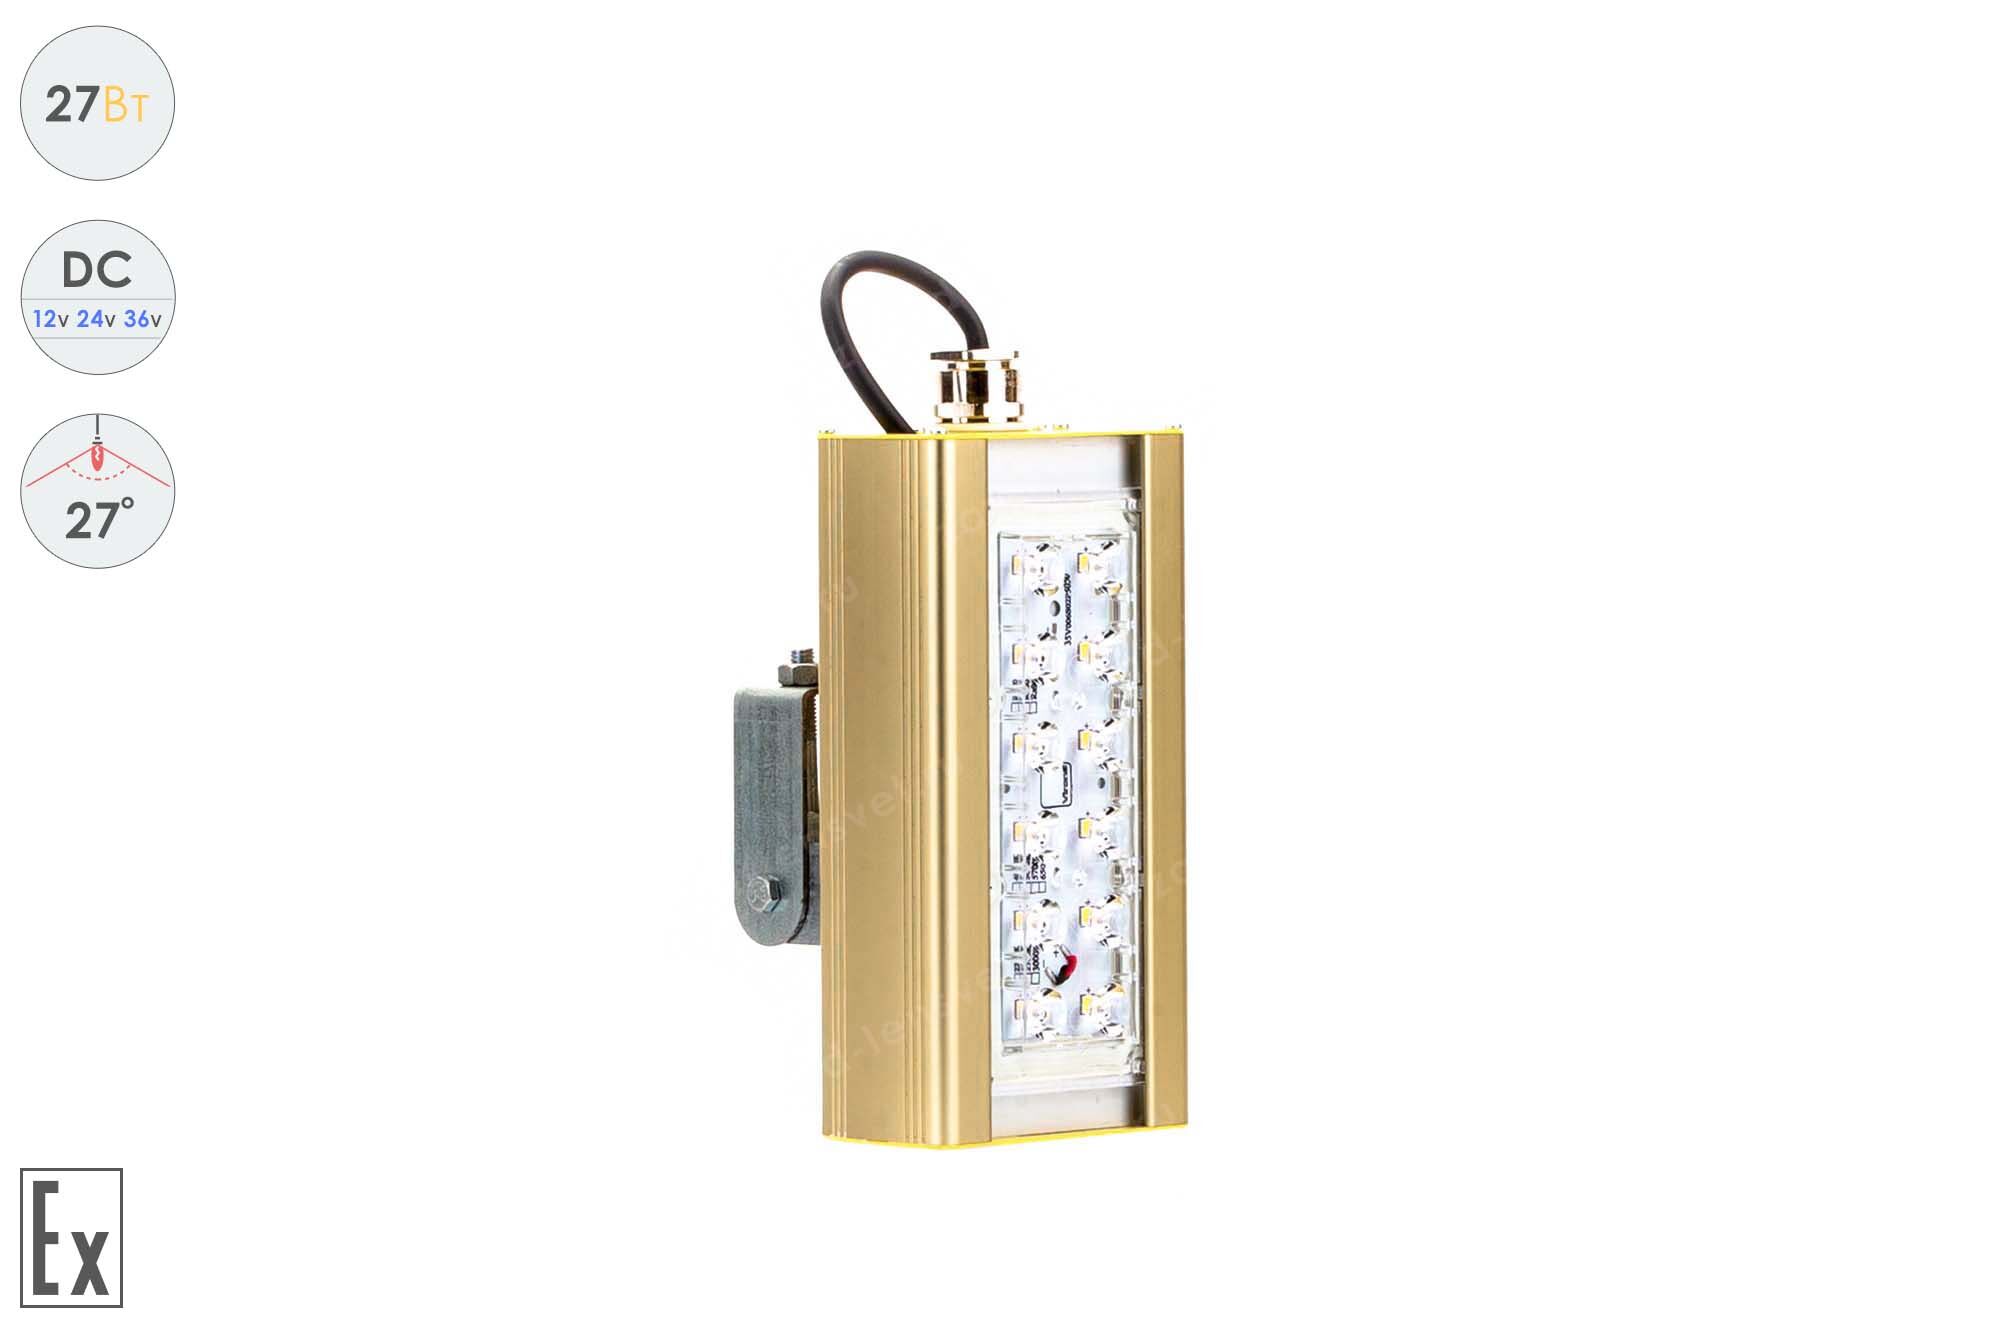 Светодиодный светильник Низковольтный Прожектор Взрывозащищенный GOLD, универсальный U-1, 27 Вт, 27°